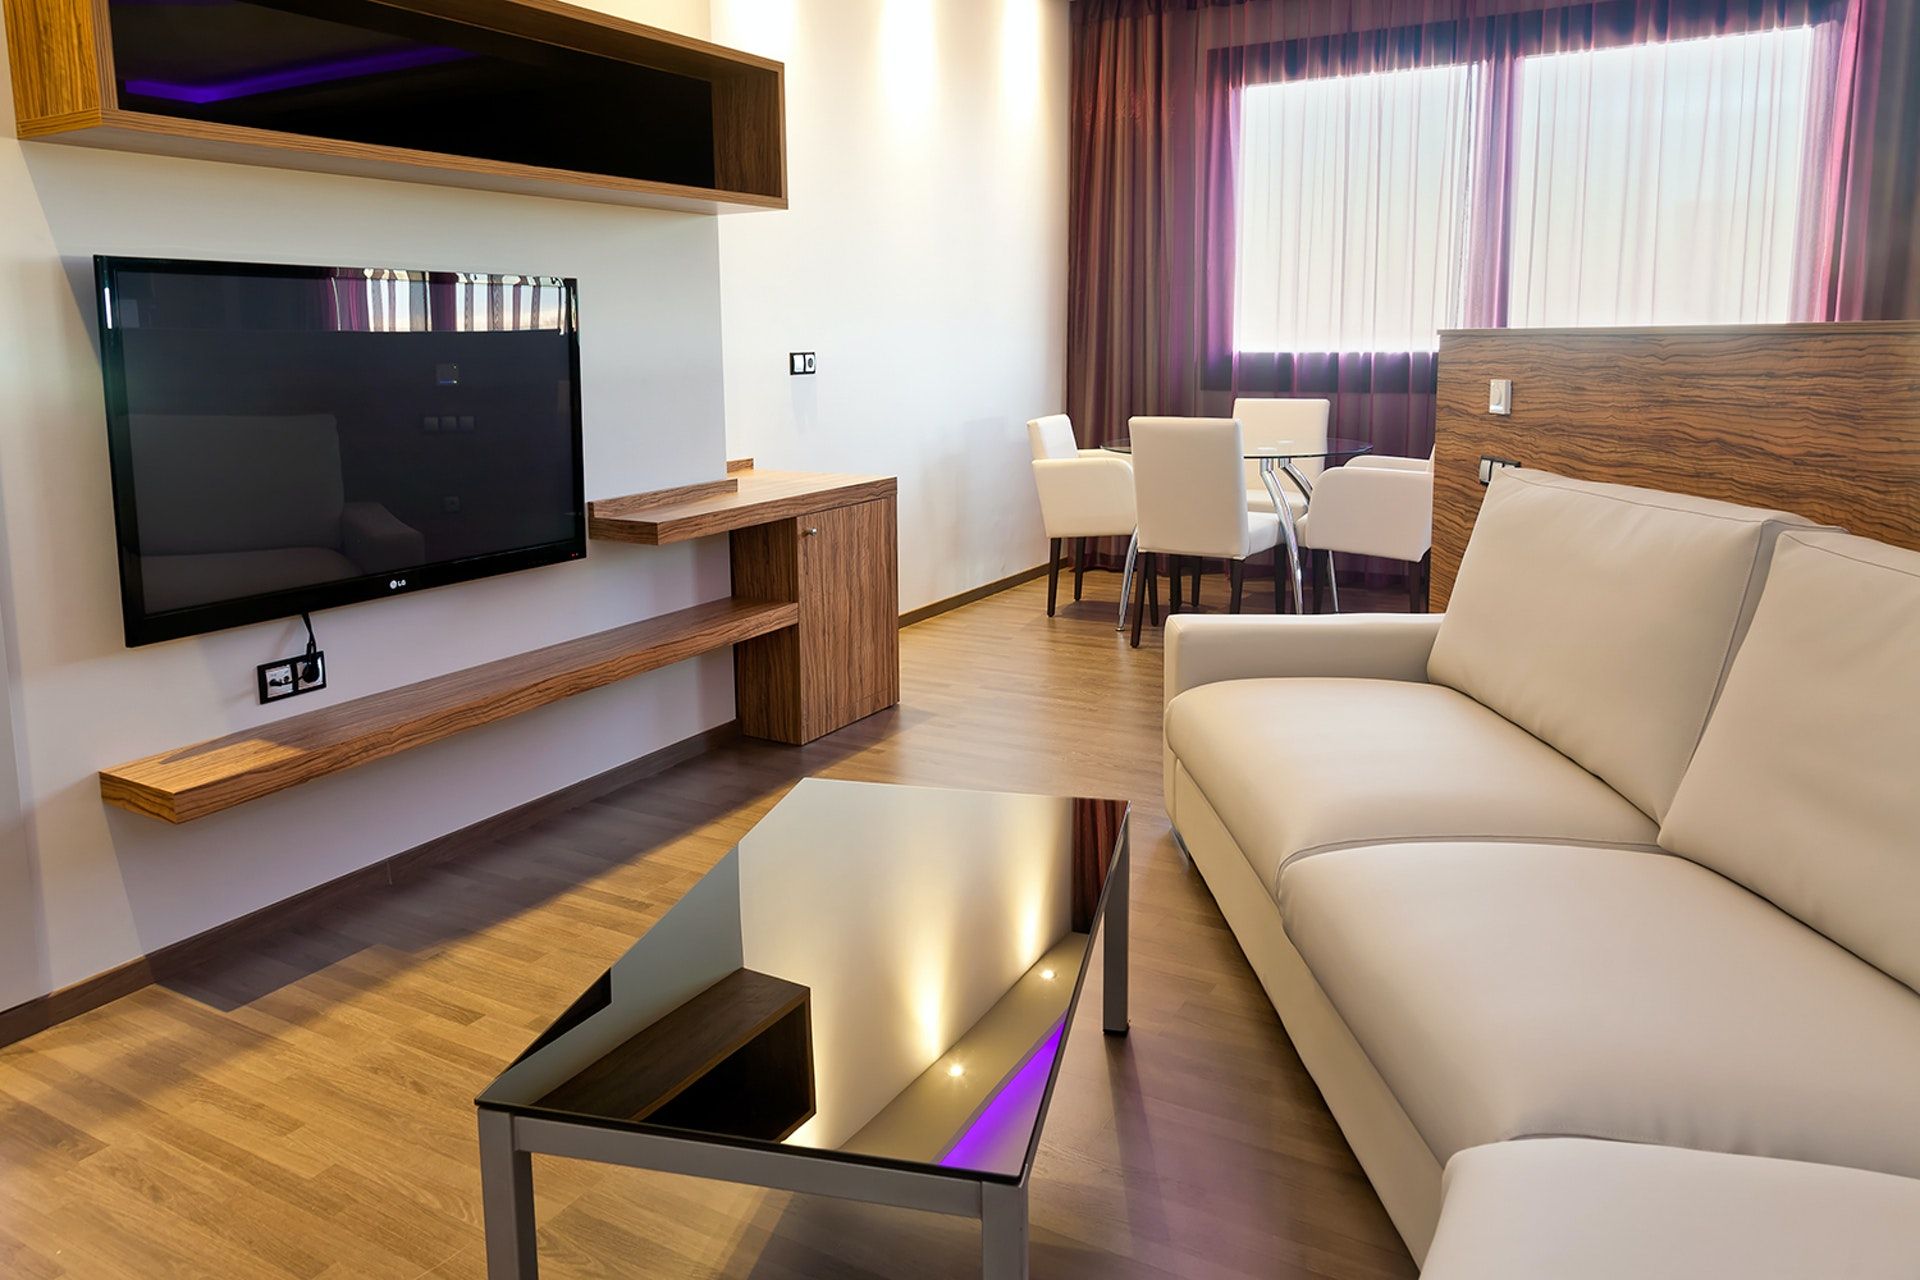 La suite más cara de la Comunitat Valenciana cuesta casi 500 euros por noche